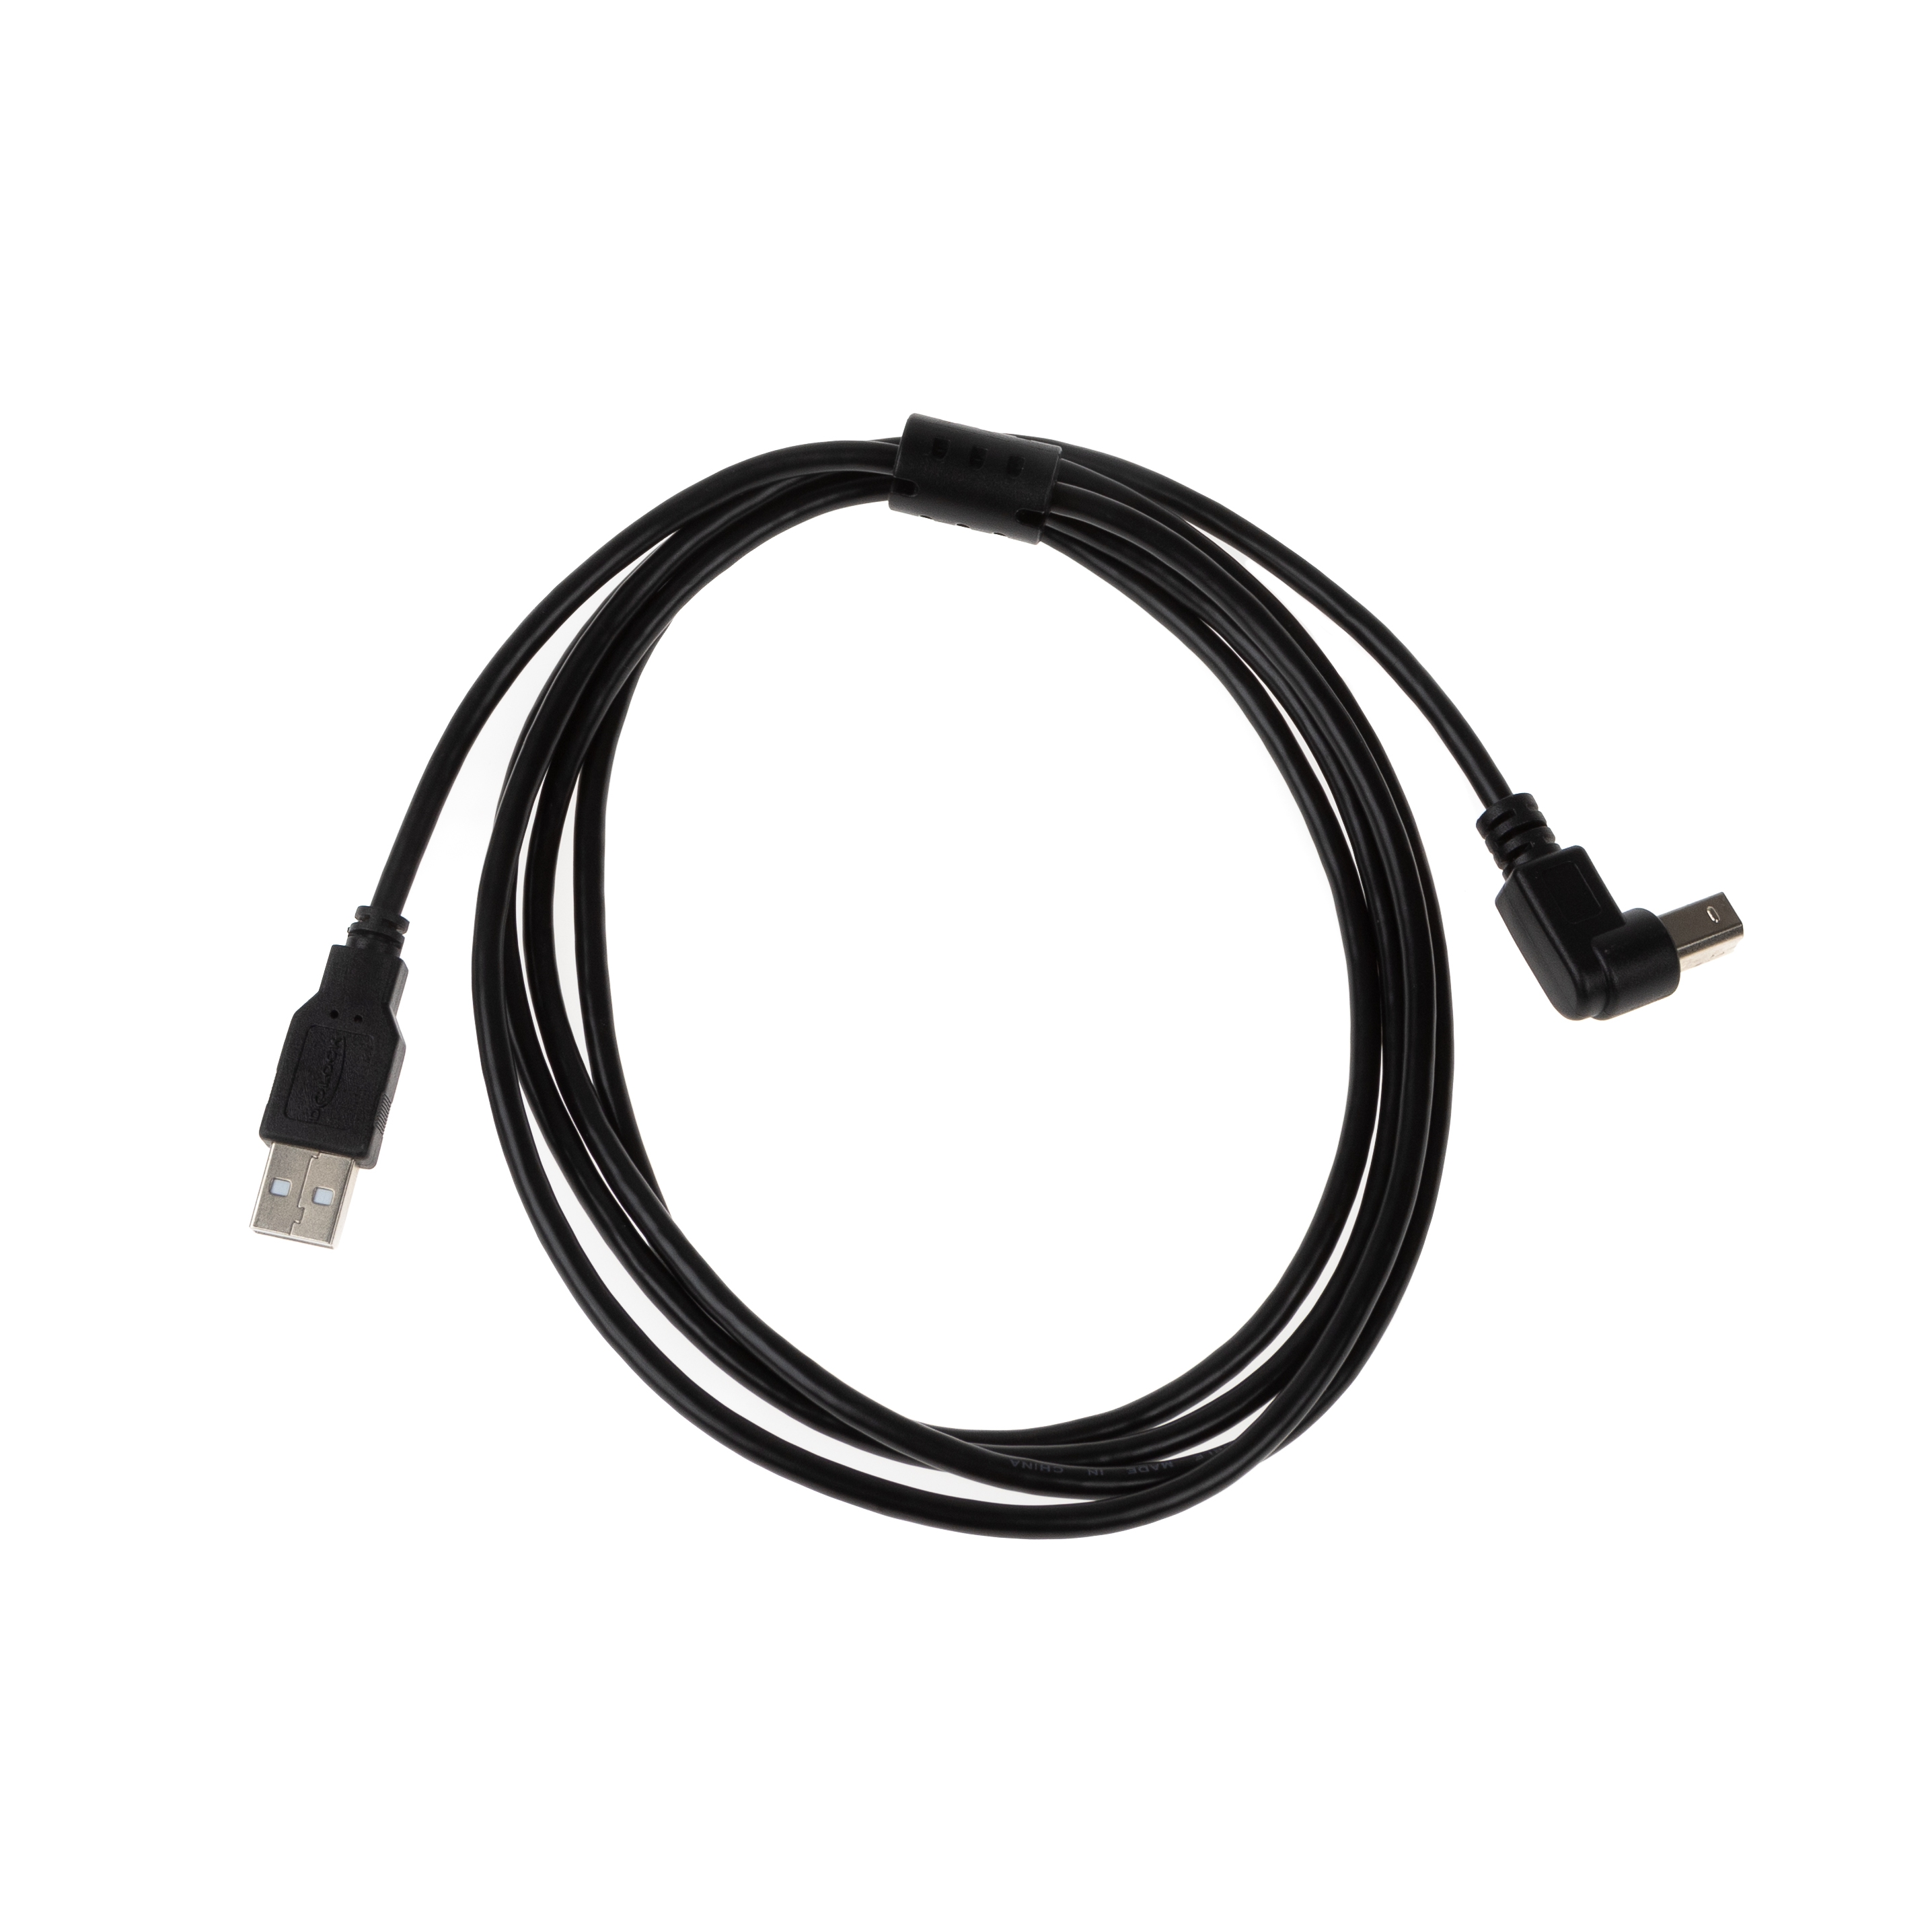 USB 2.0 Kabel mit B-Winkelstecker (90° NACH UNTEN) und Ferritkern 2m